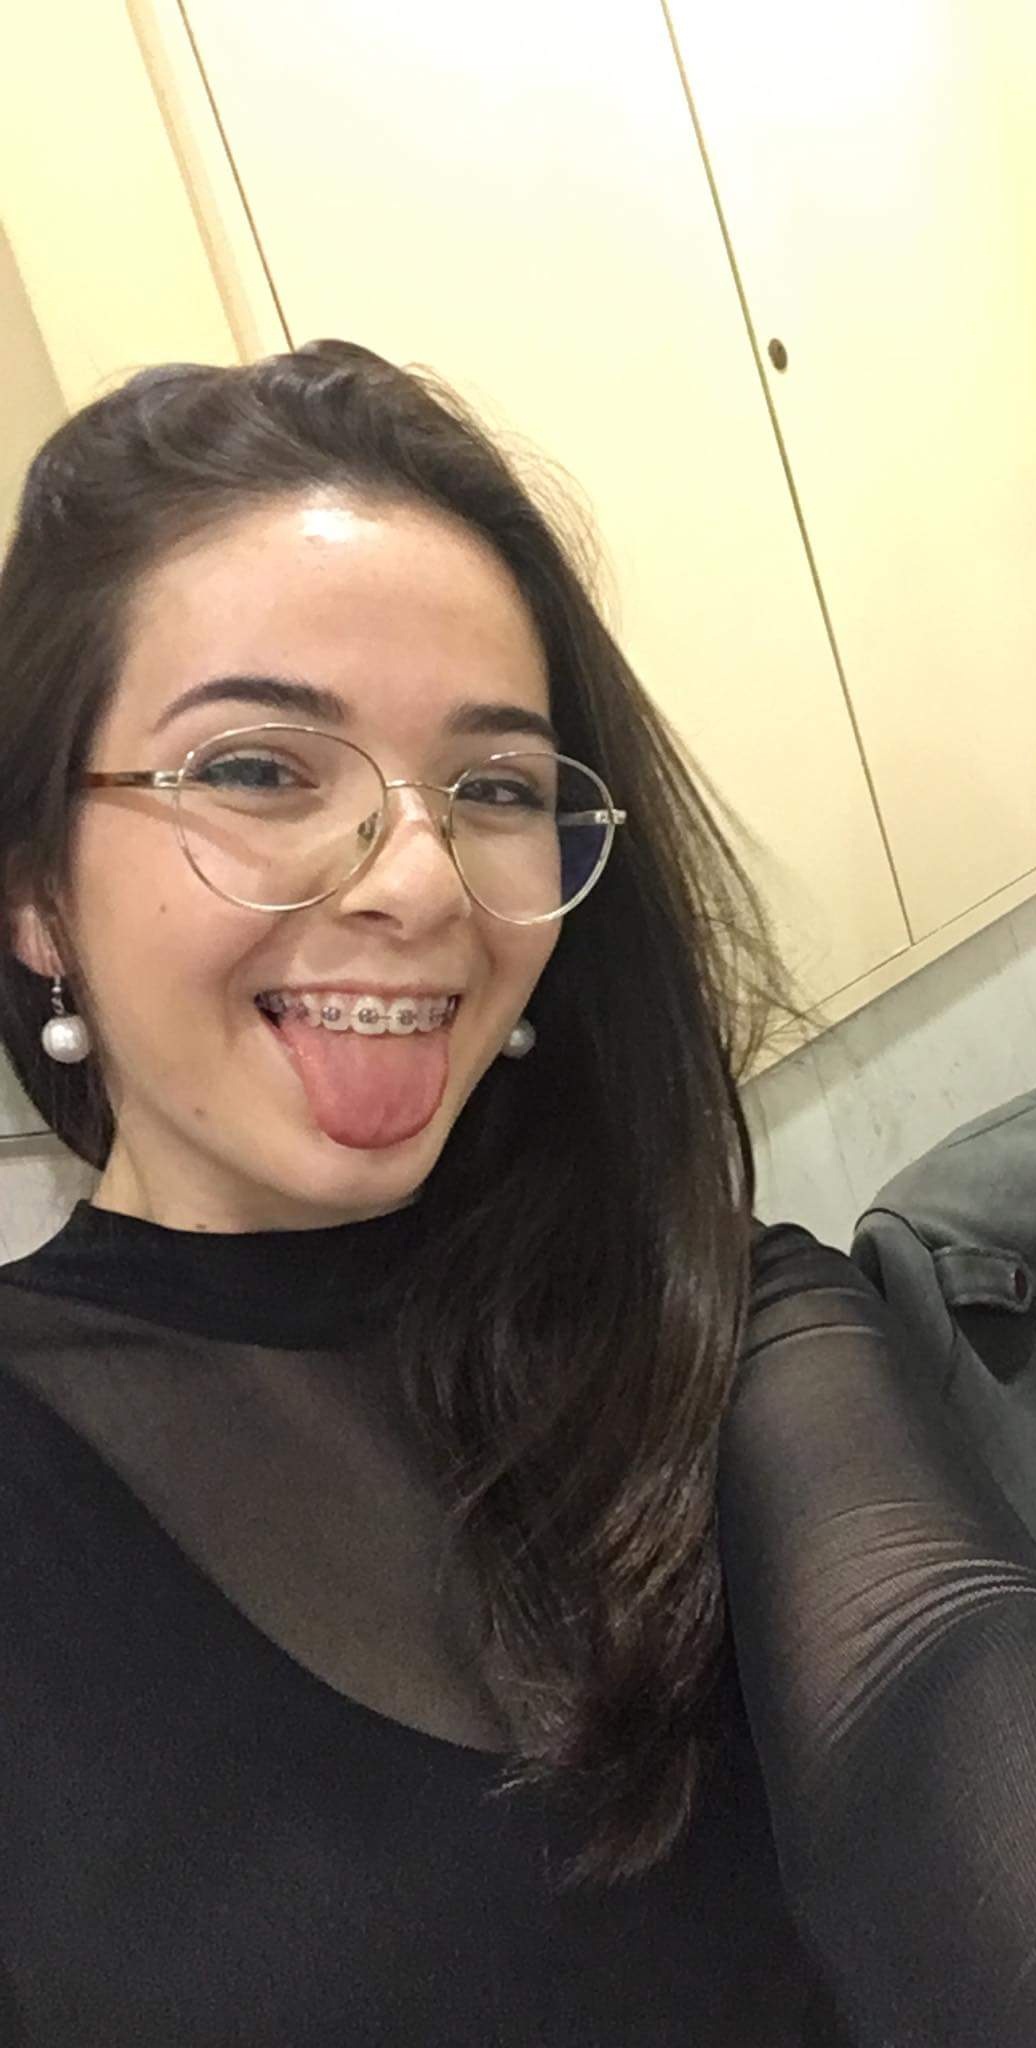 Glasses cutie with braces for maximum pleasure Porn Pic - EPORNER